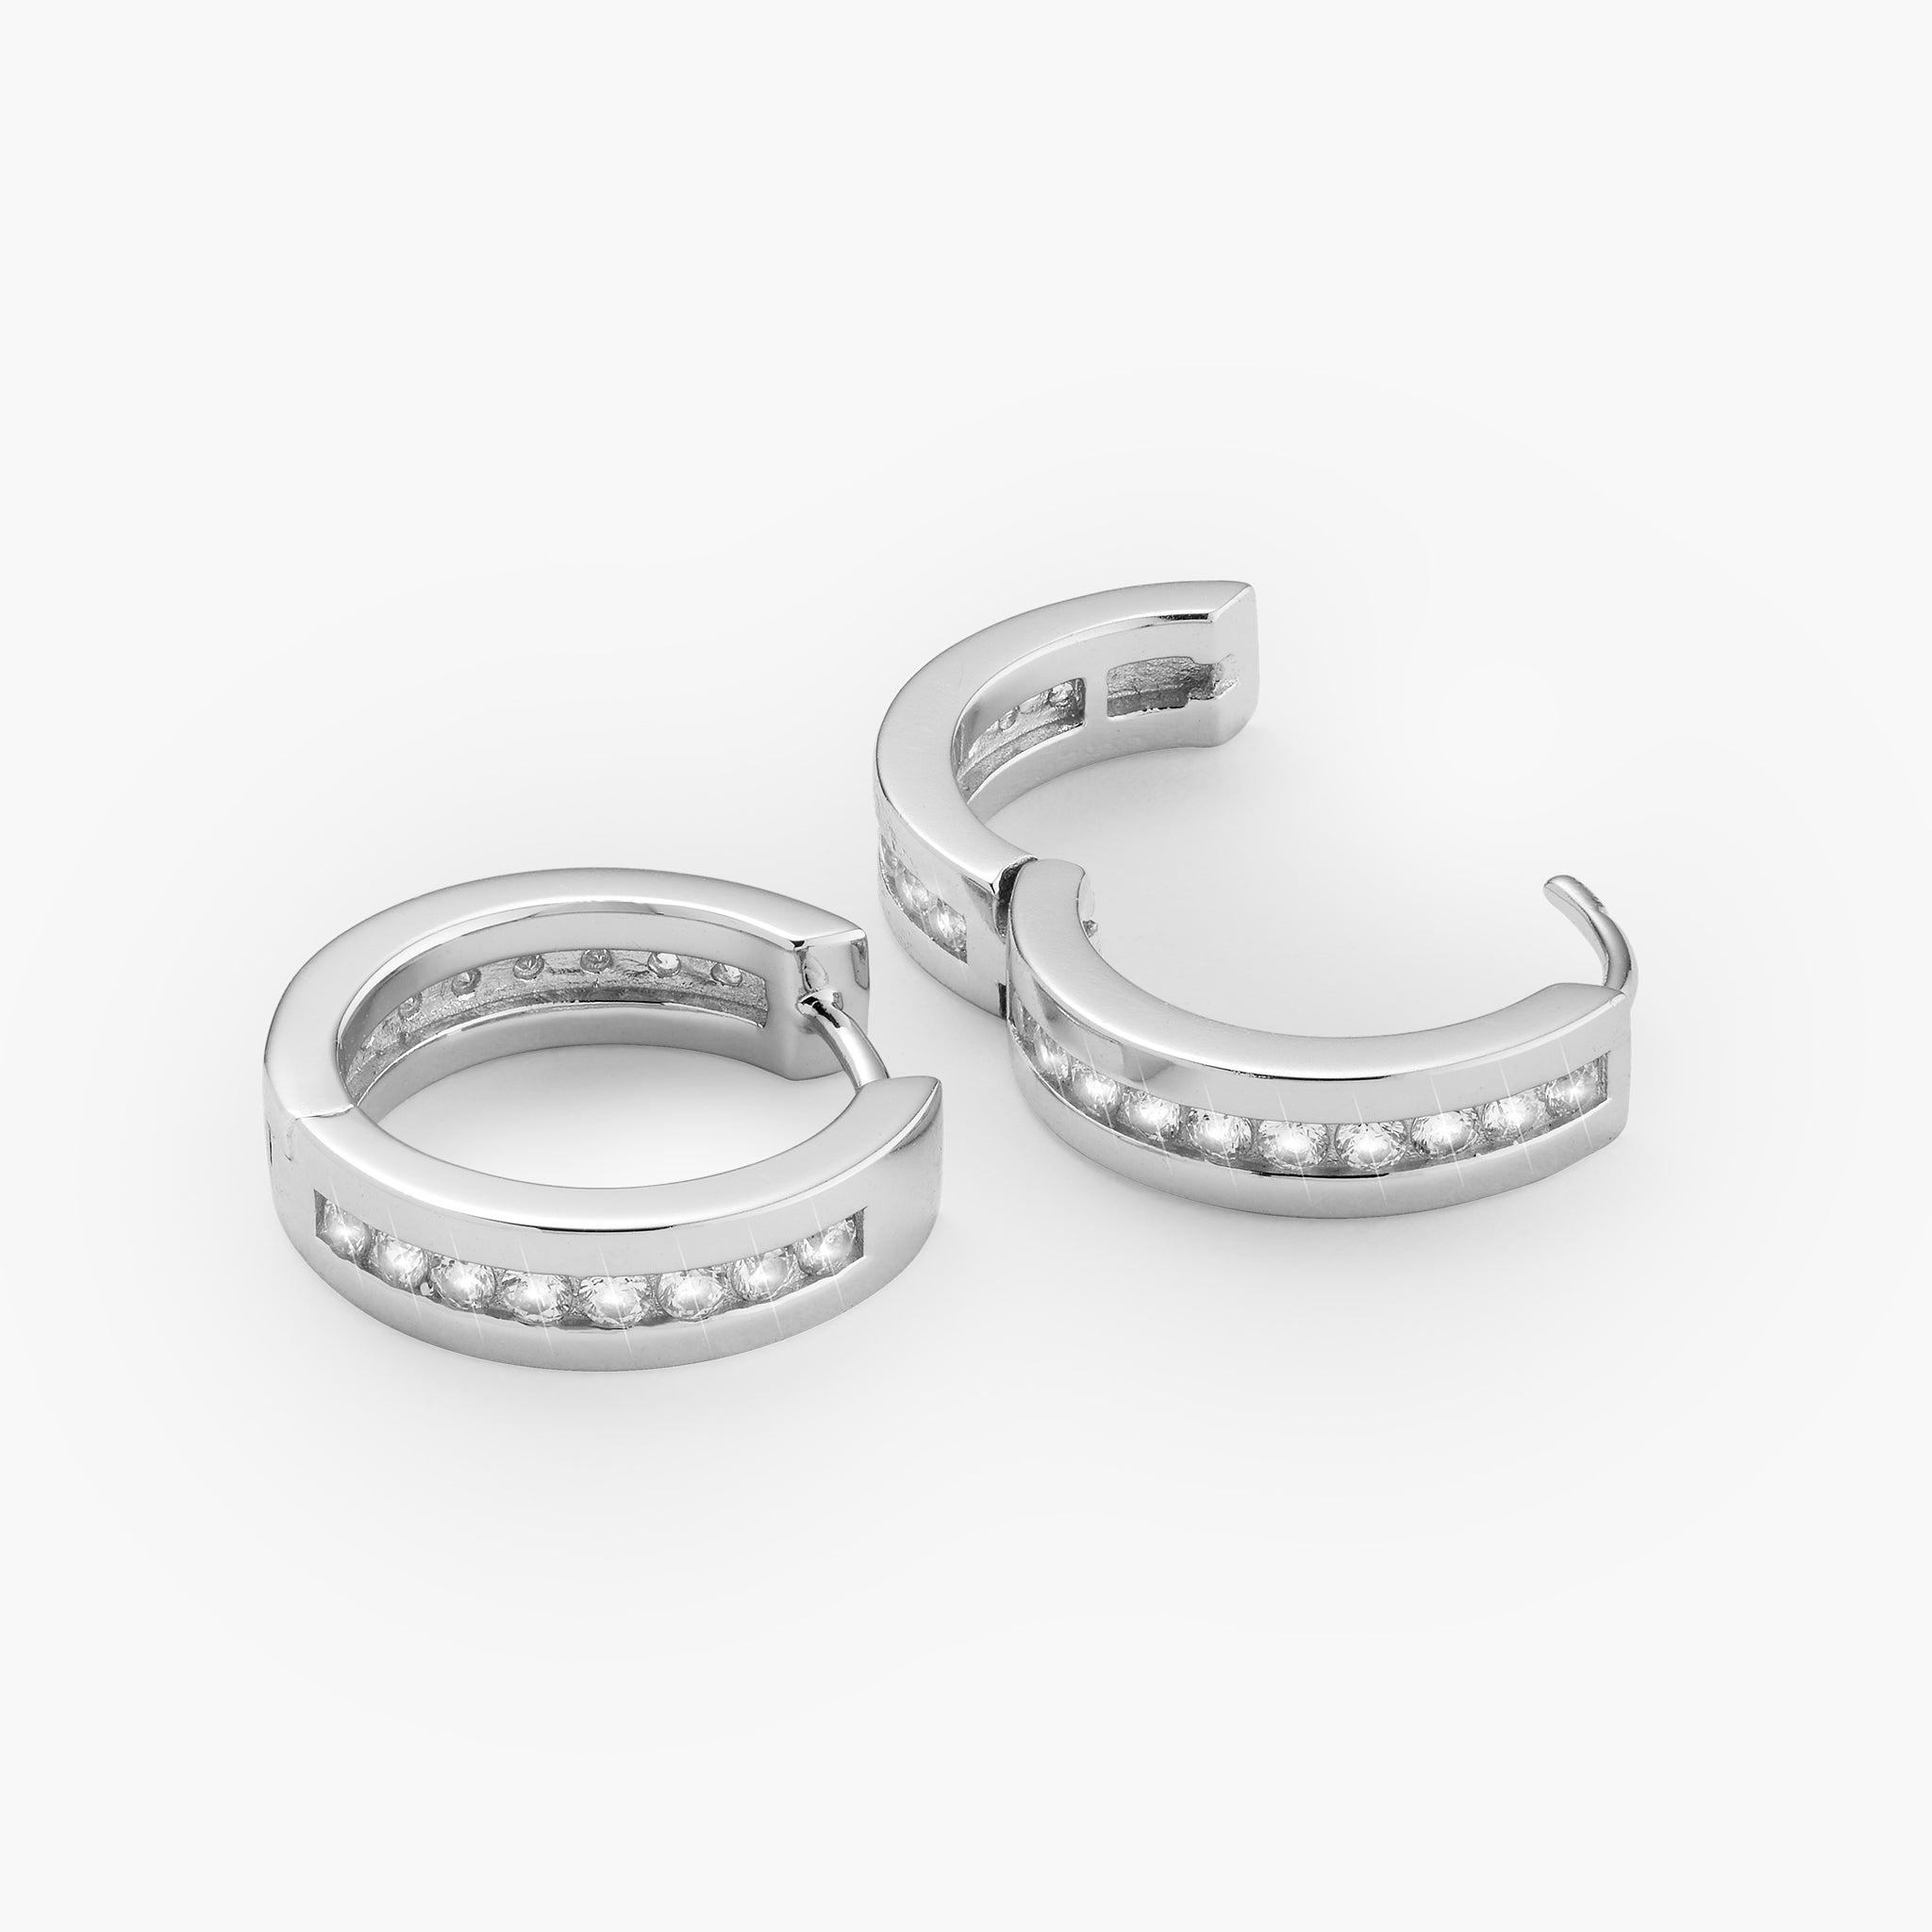 Studded Frame Hoop Earrings - Men's Silver Hoops - JAXXON